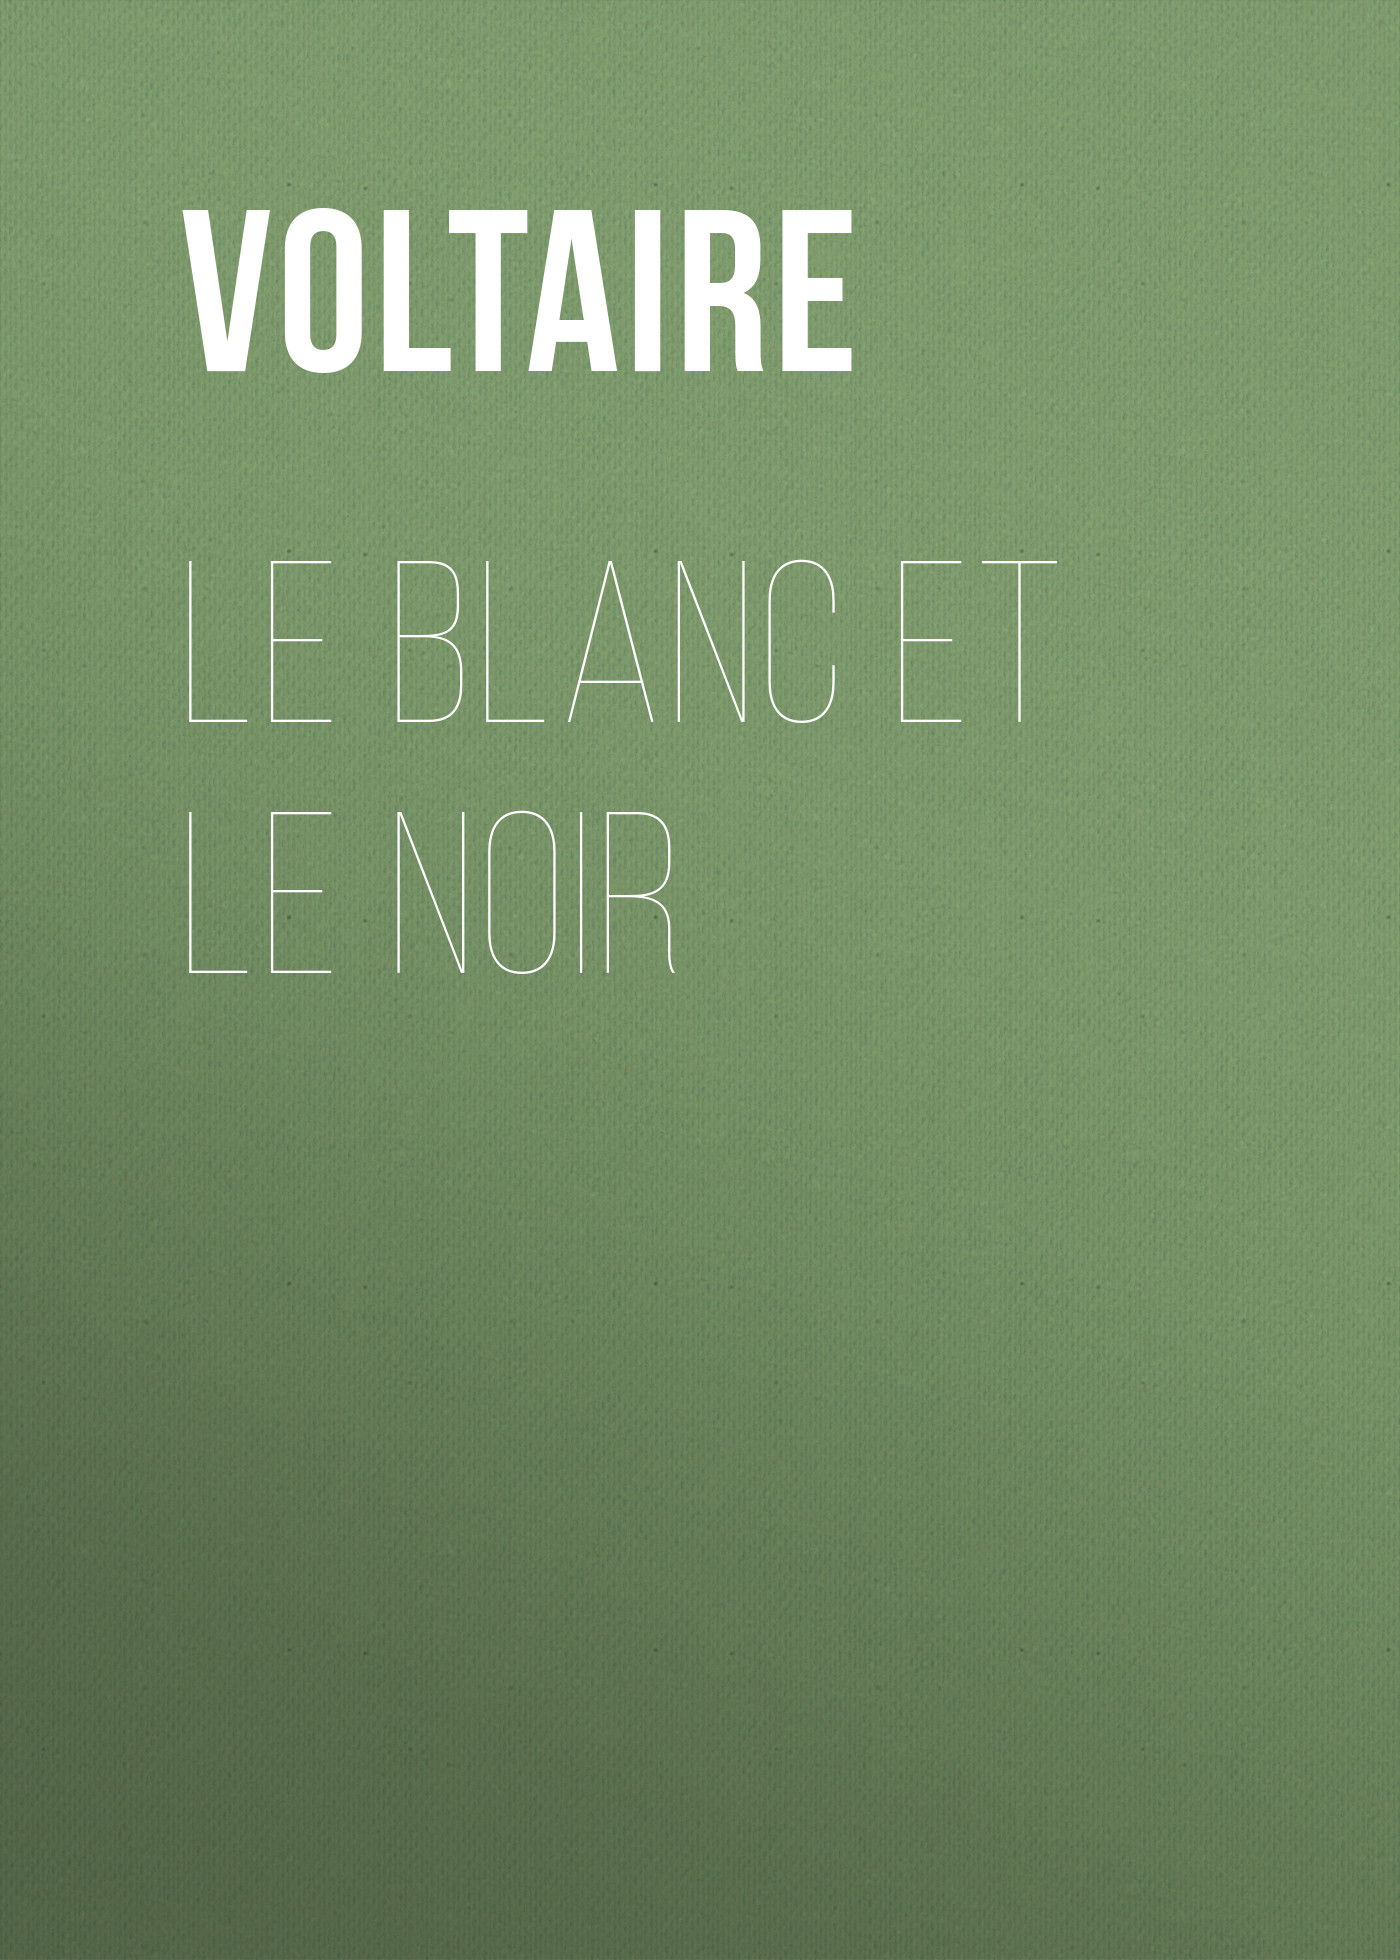 Книга Le Blanc et le Noir из серии , созданная  Voltaire, может относится к жанру Литература 18 века, Зарубежная классика. Стоимость электронной книги Le Blanc et le Noir с идентификатором 25561116 составляет 0 руб.